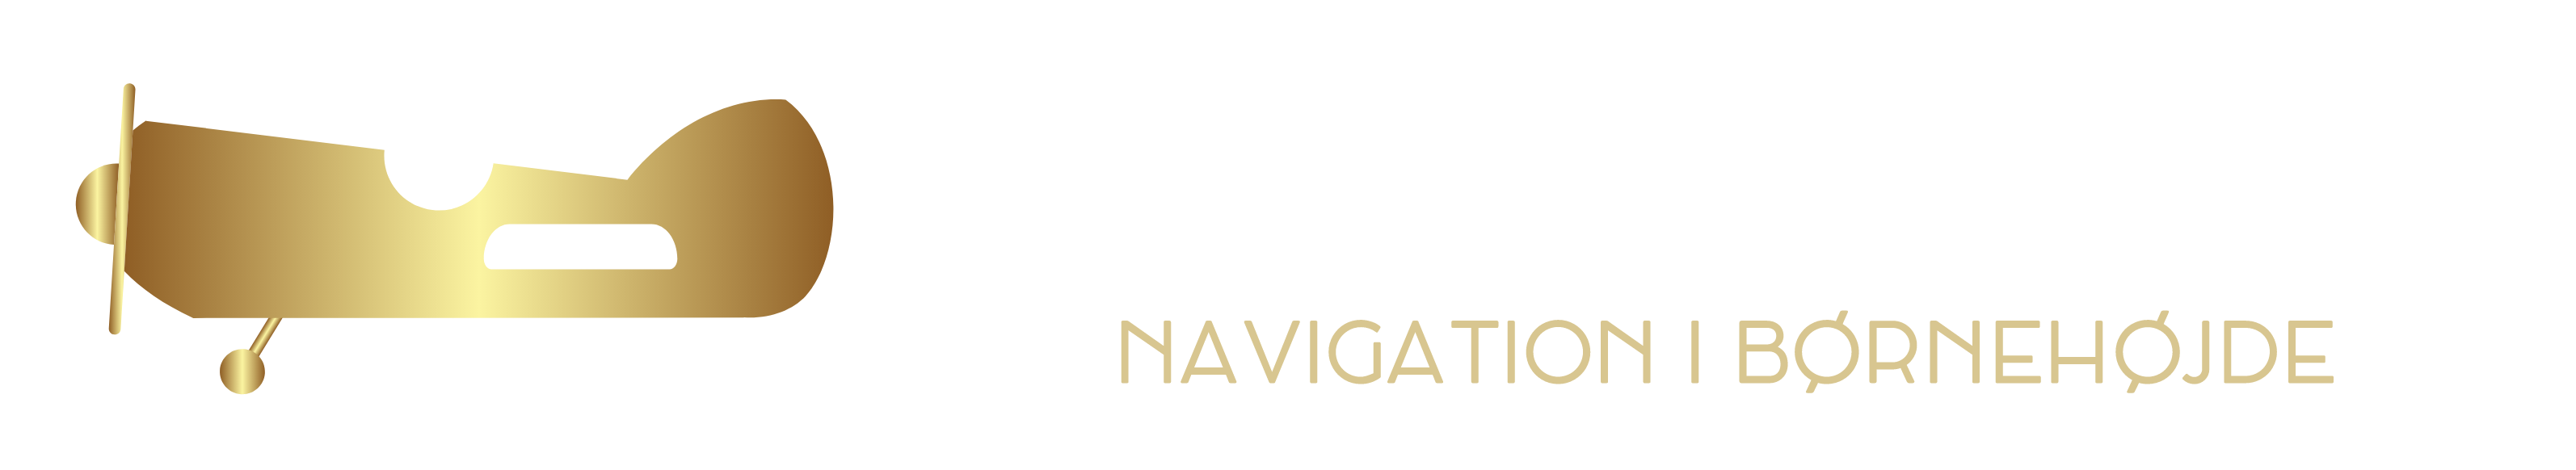 Pilotskolen